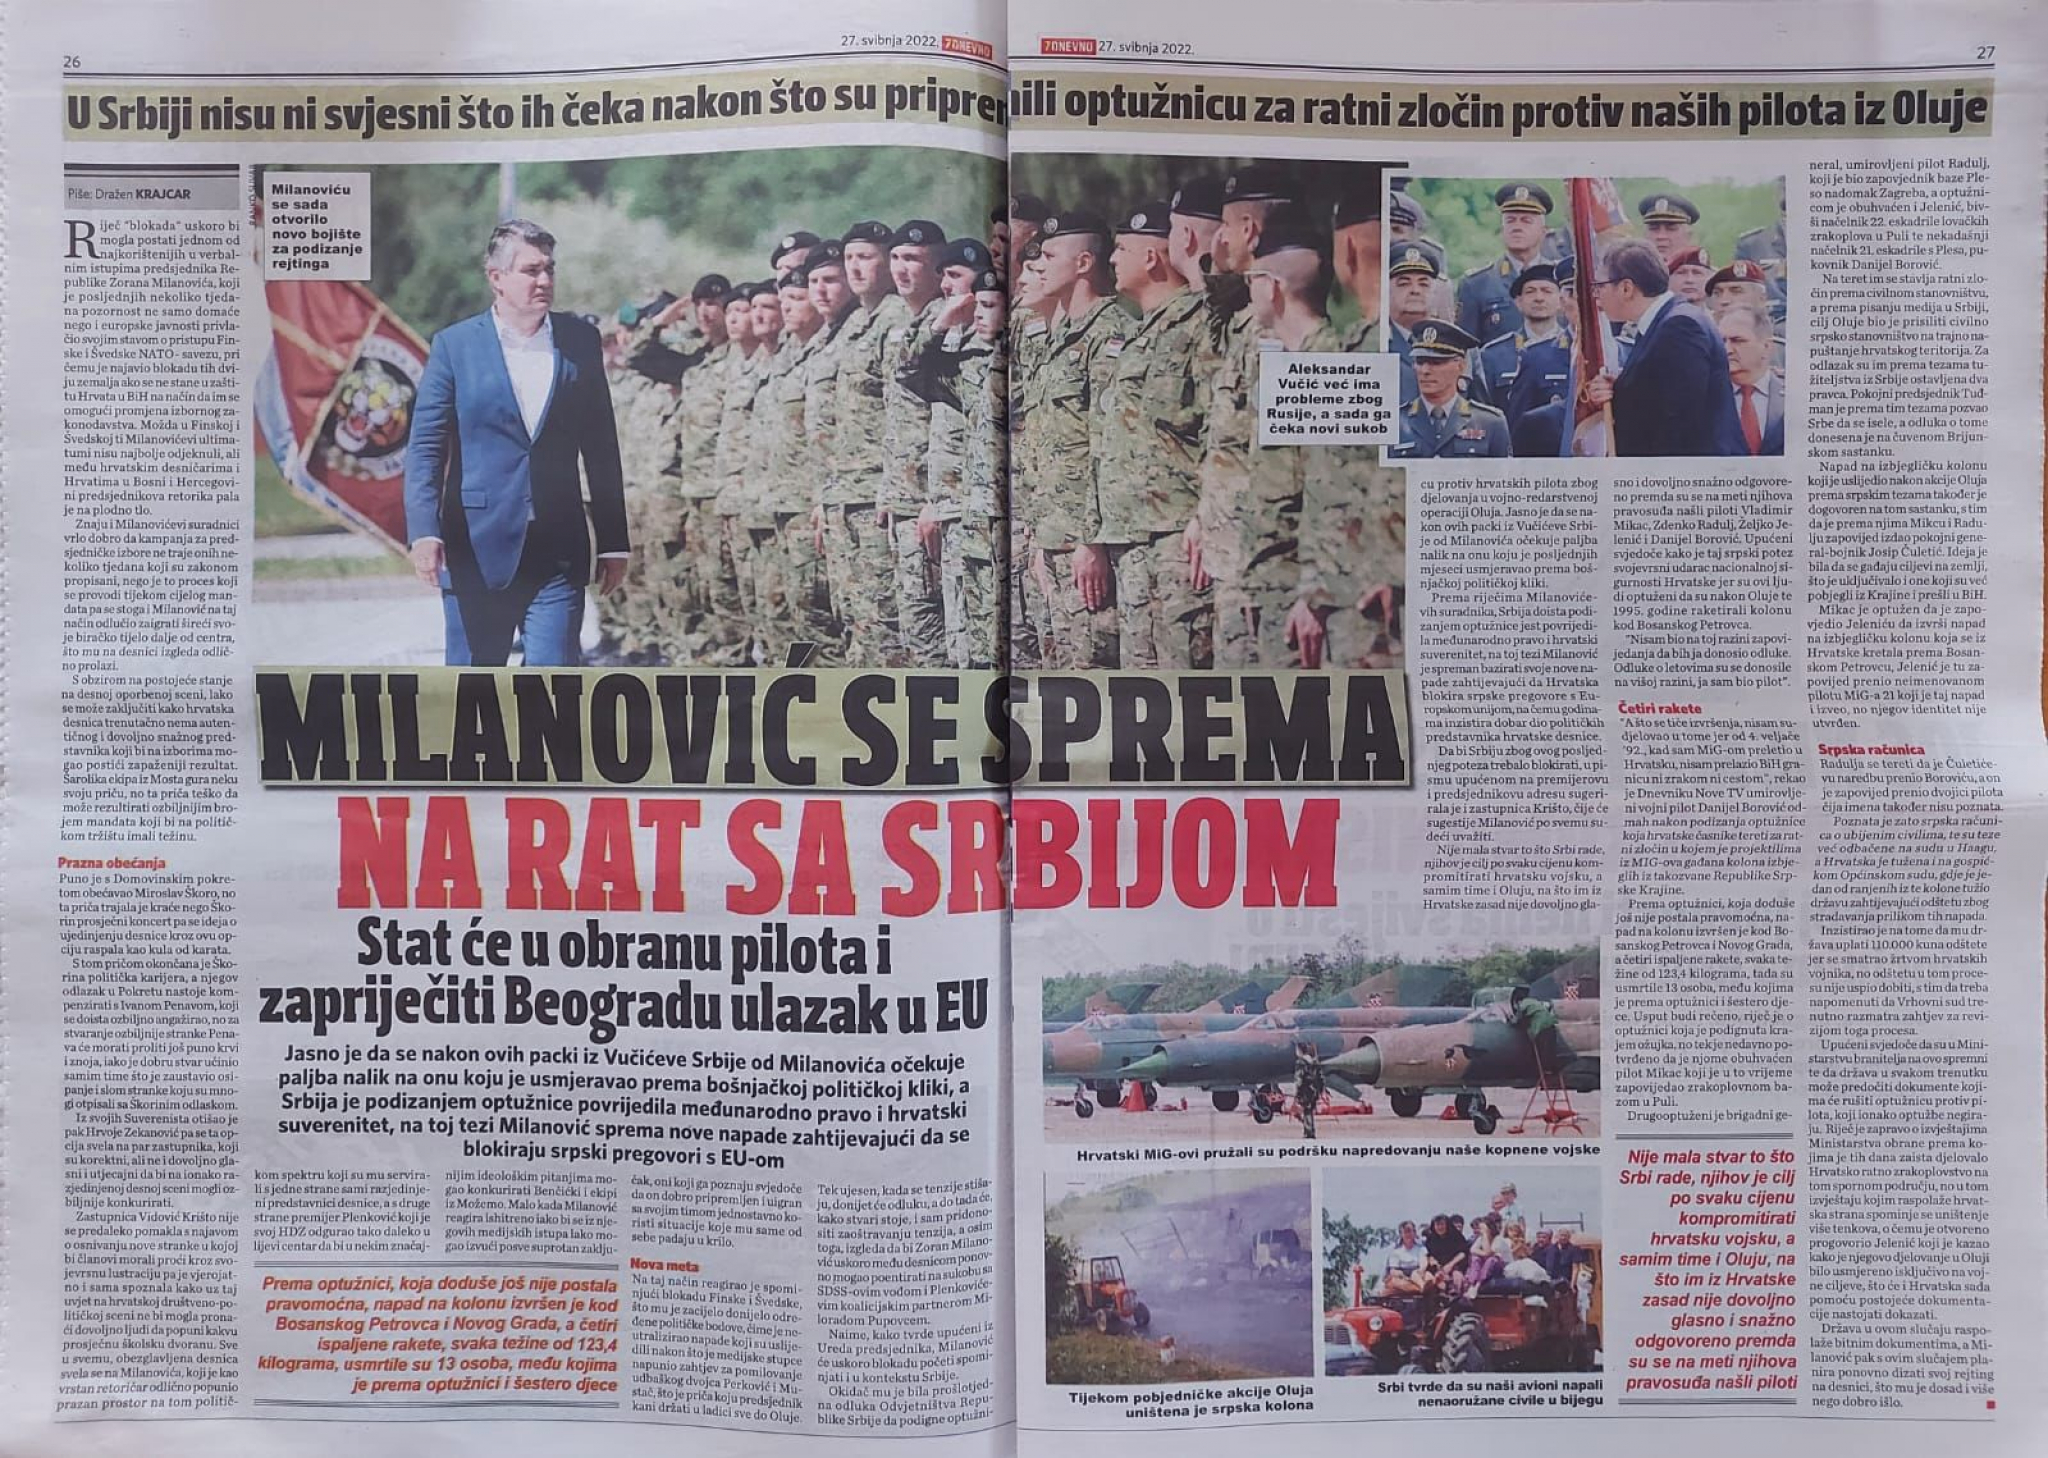 NJIHOVI MEDIJI PIŠU Hrvatska se sprema za rat protiv Srbije!